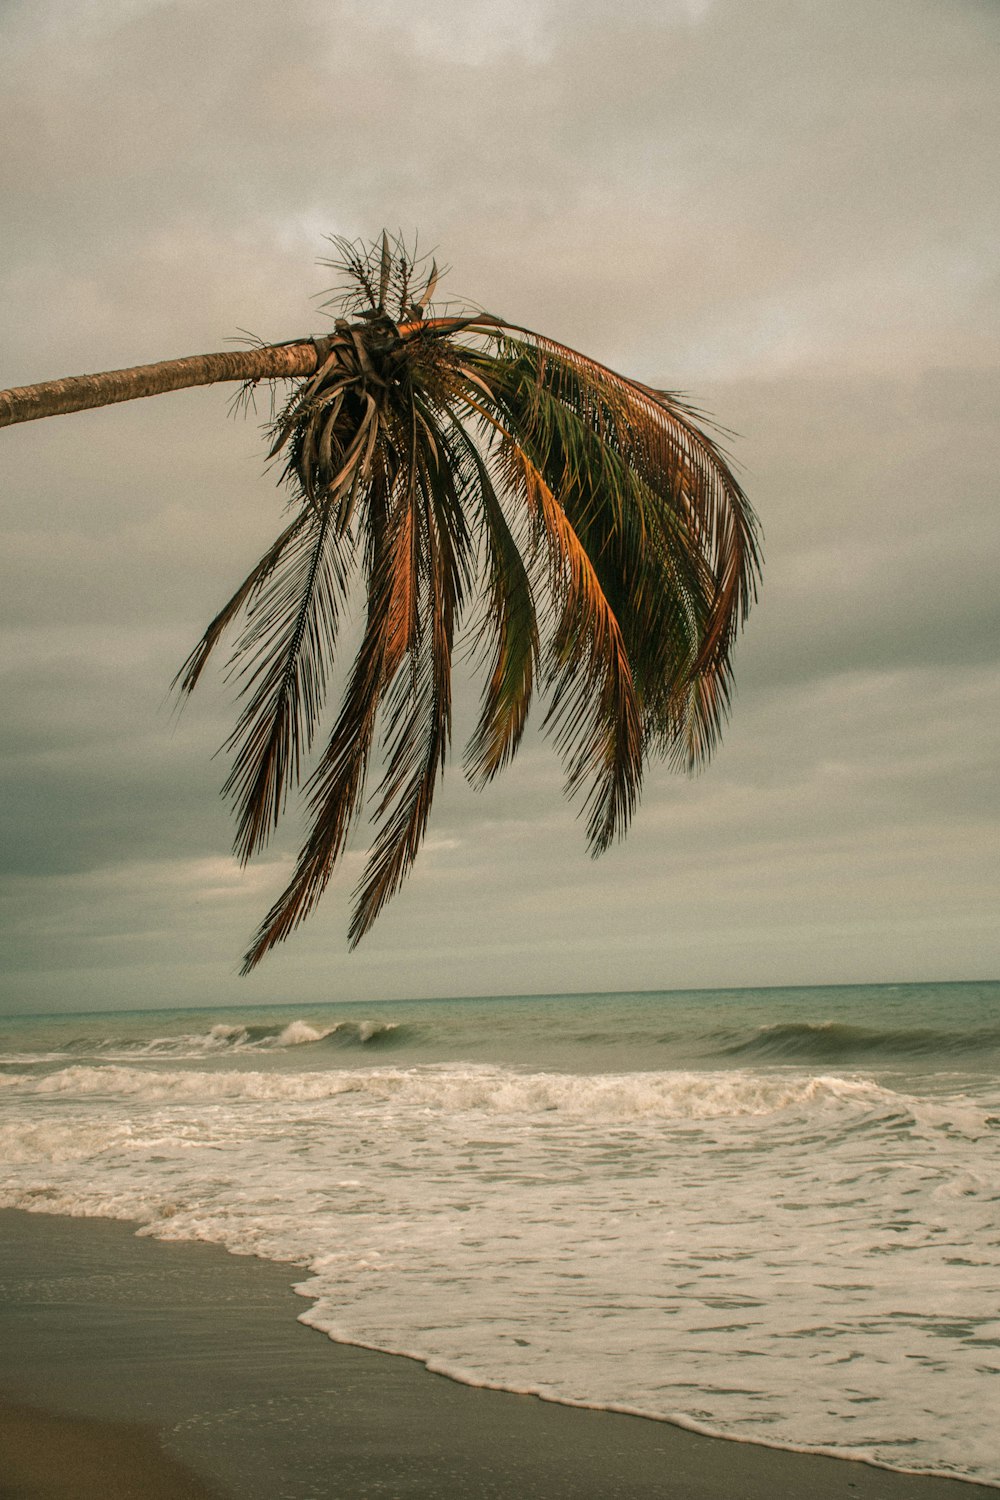 Palmier près de la mer sous un ciel nuageux pendant la journée